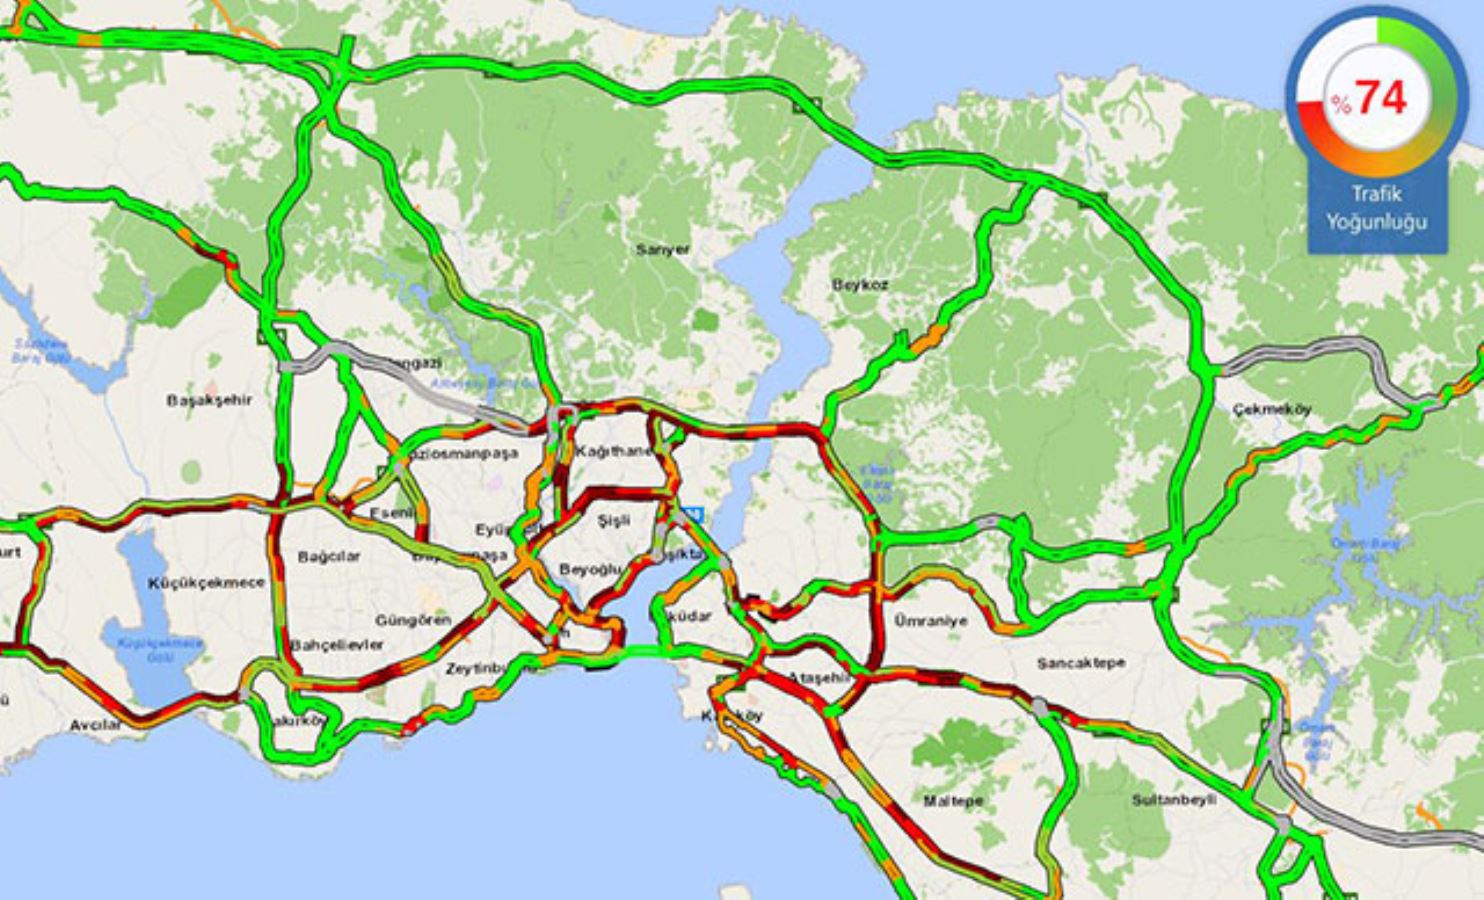 İstanbul'da trafik yoğunluğu yüzde 74'e ulaştı